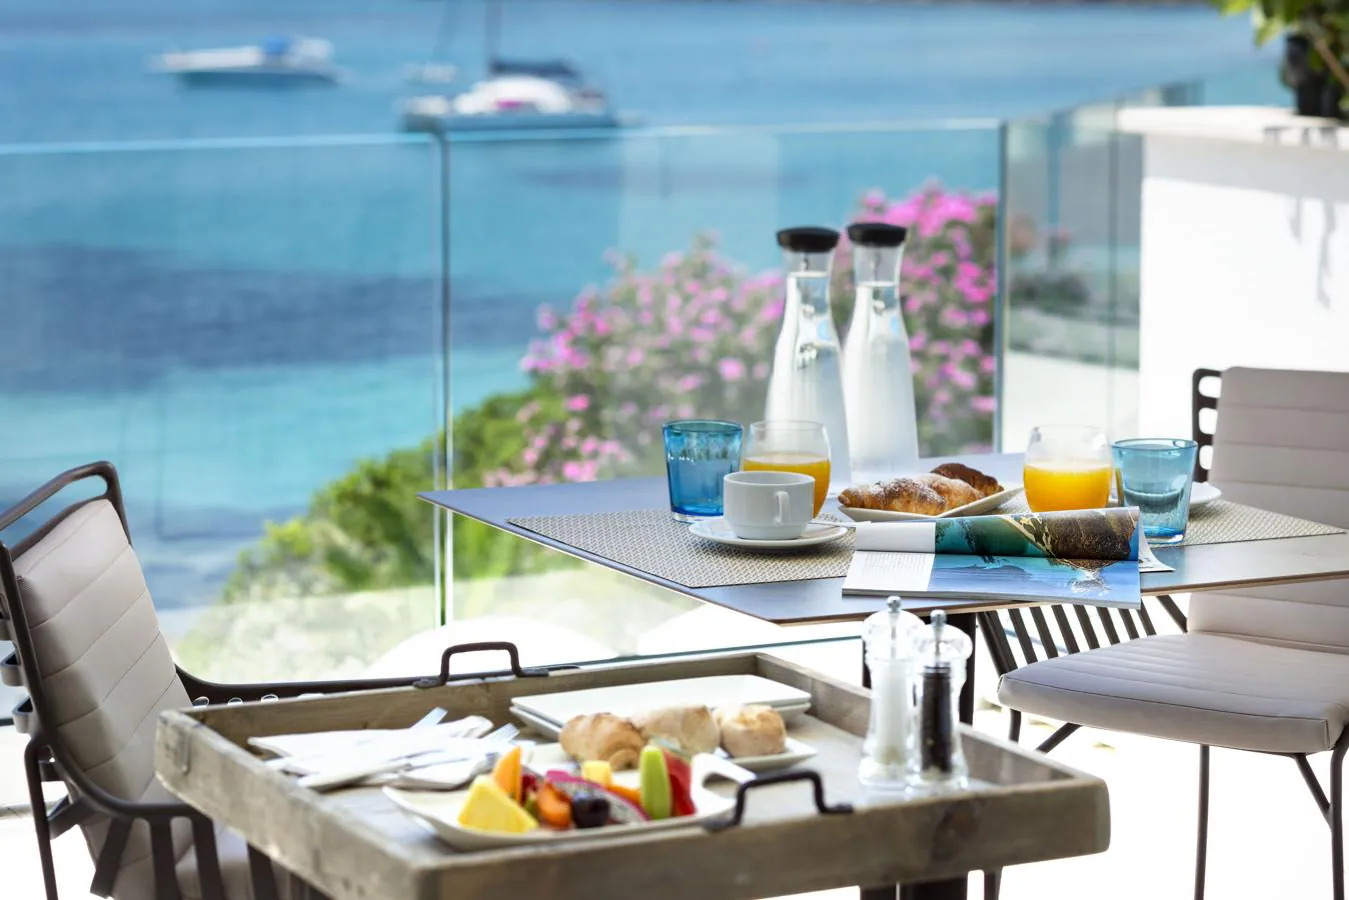 Mejor hotel cerca del mar. El hotel italiano Gabbiano Azzurro Hotel &amp; Suites se encuentra ubicado a escasos metros de una extraordinaria playa de arena blanca, en la famosa Costa Esmeralda de Cerdeña. Este hotel tiene además 2 piscinas en la terraza, con vistas al mar Mediterráneo.